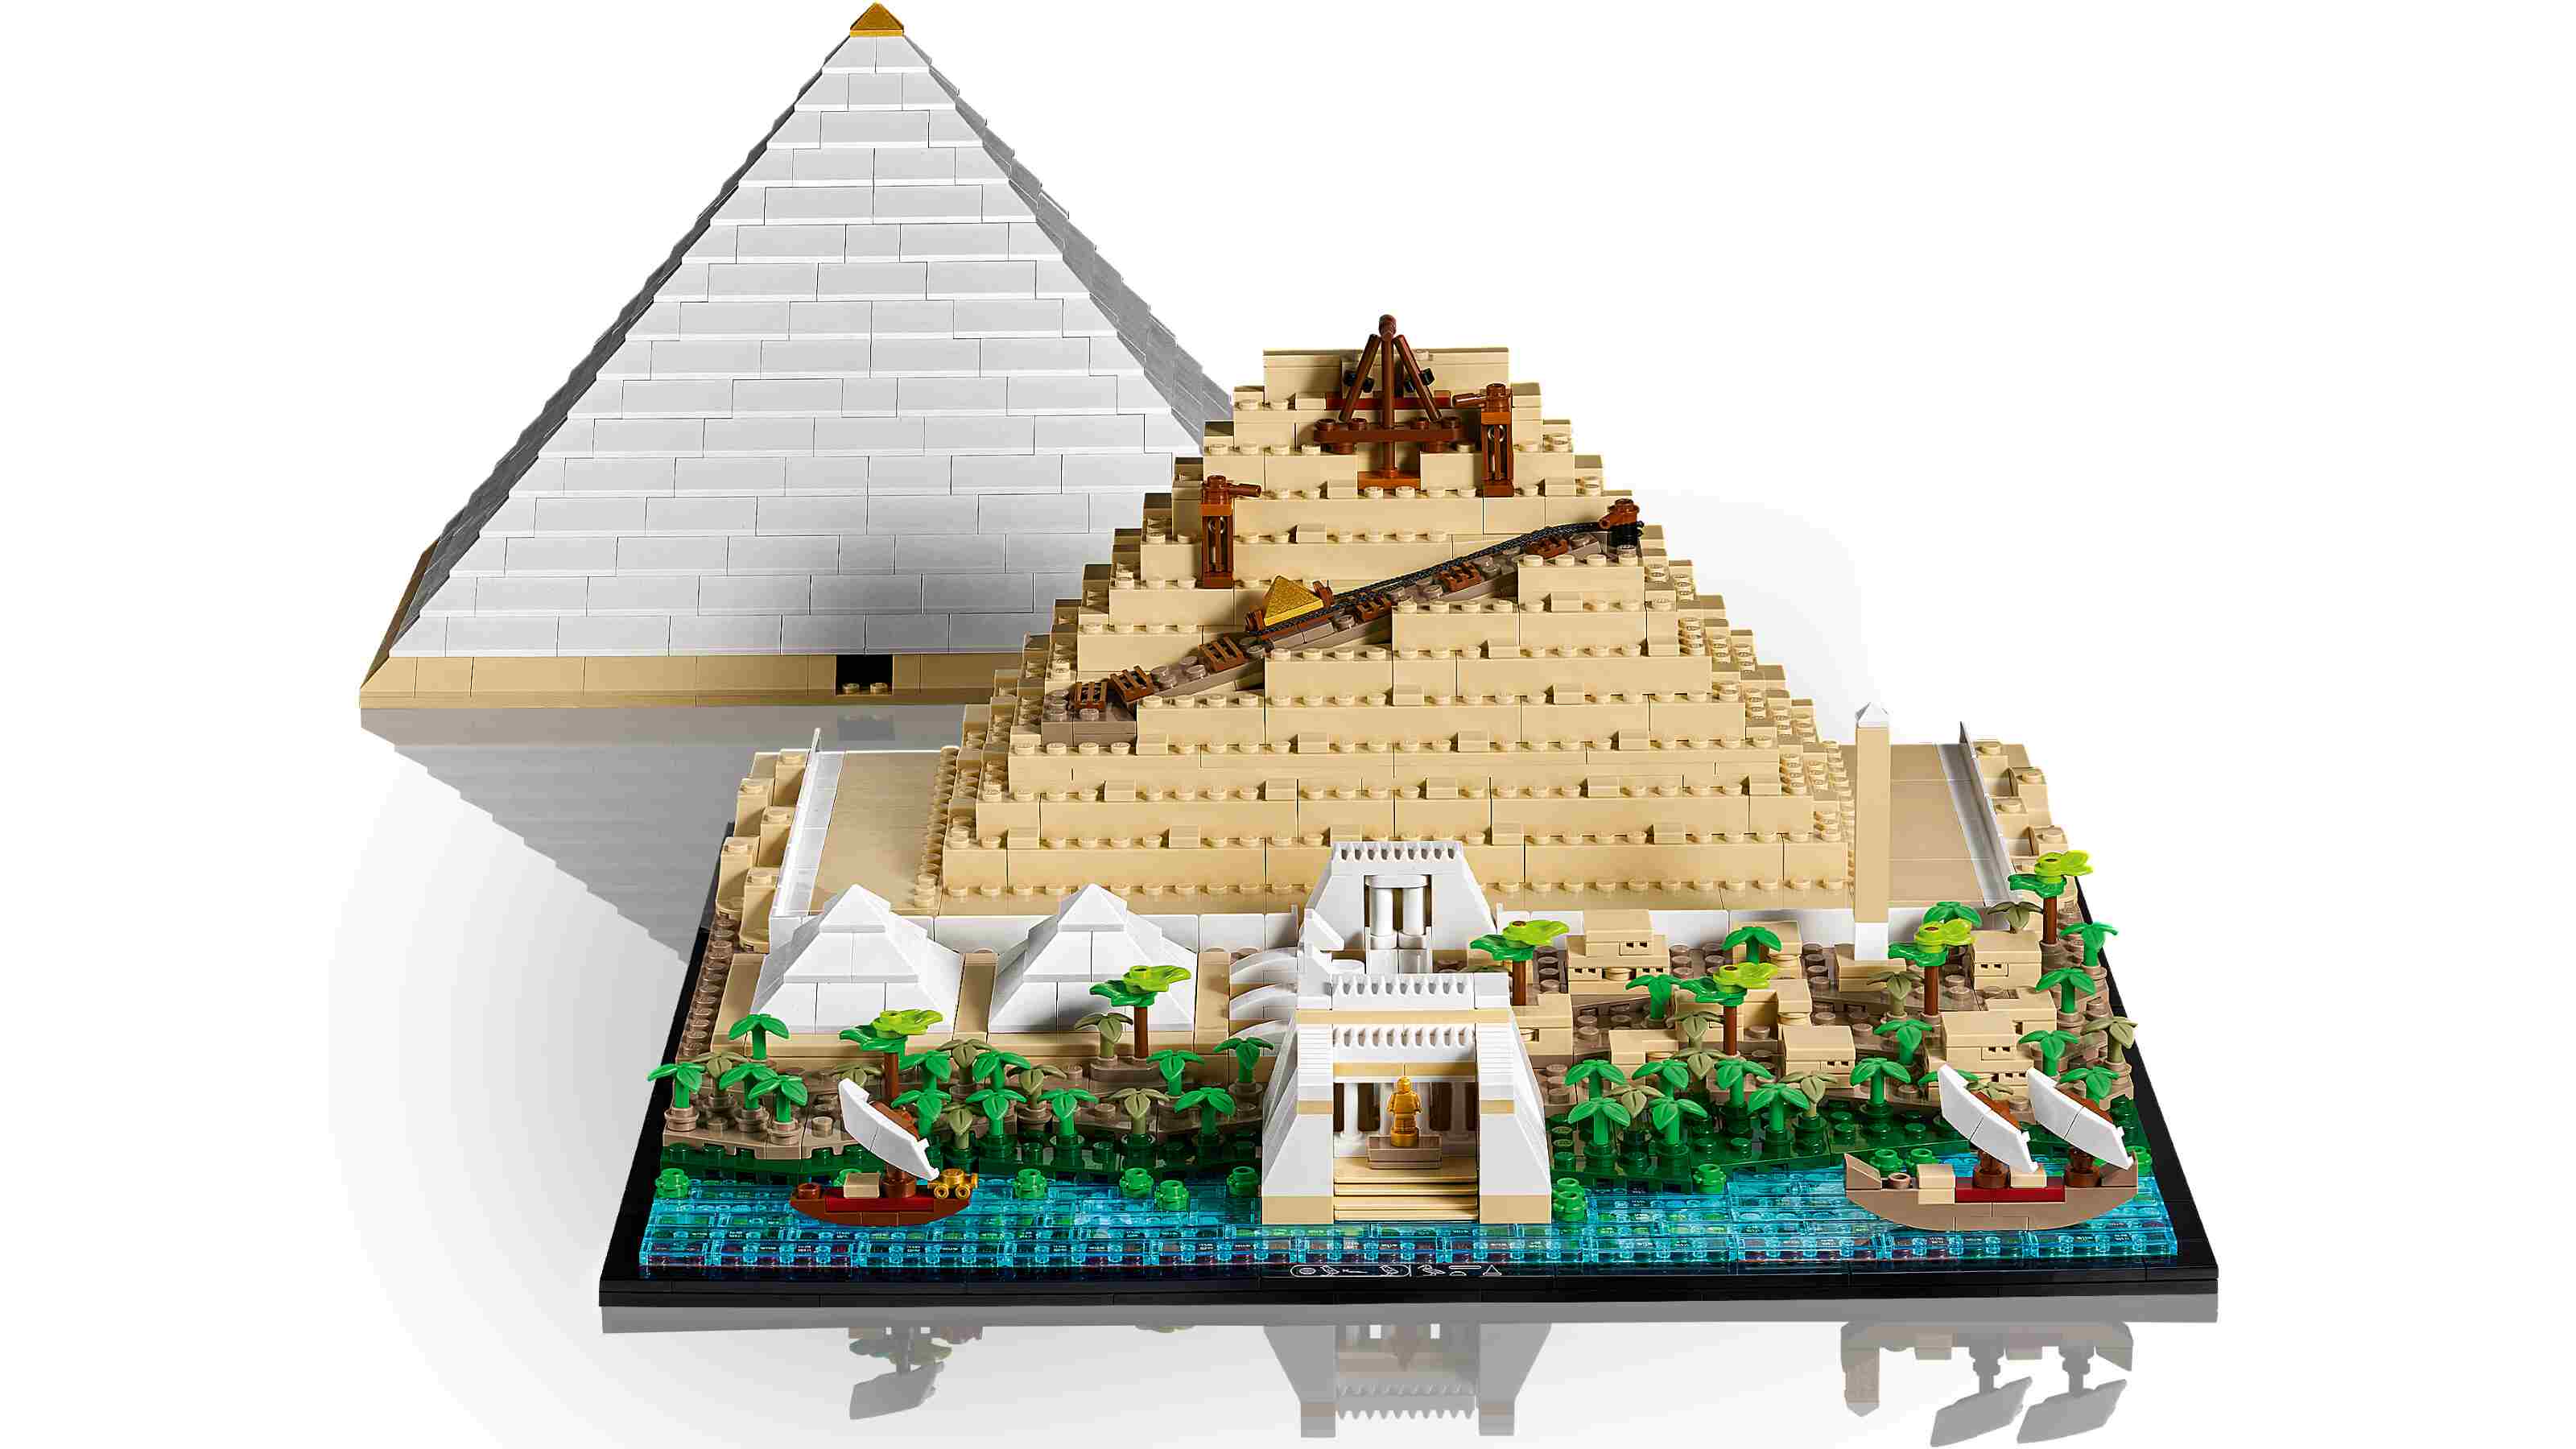 LEGO 21058 Architecture Cheops-Pyramide Bausatz für Erwachsene